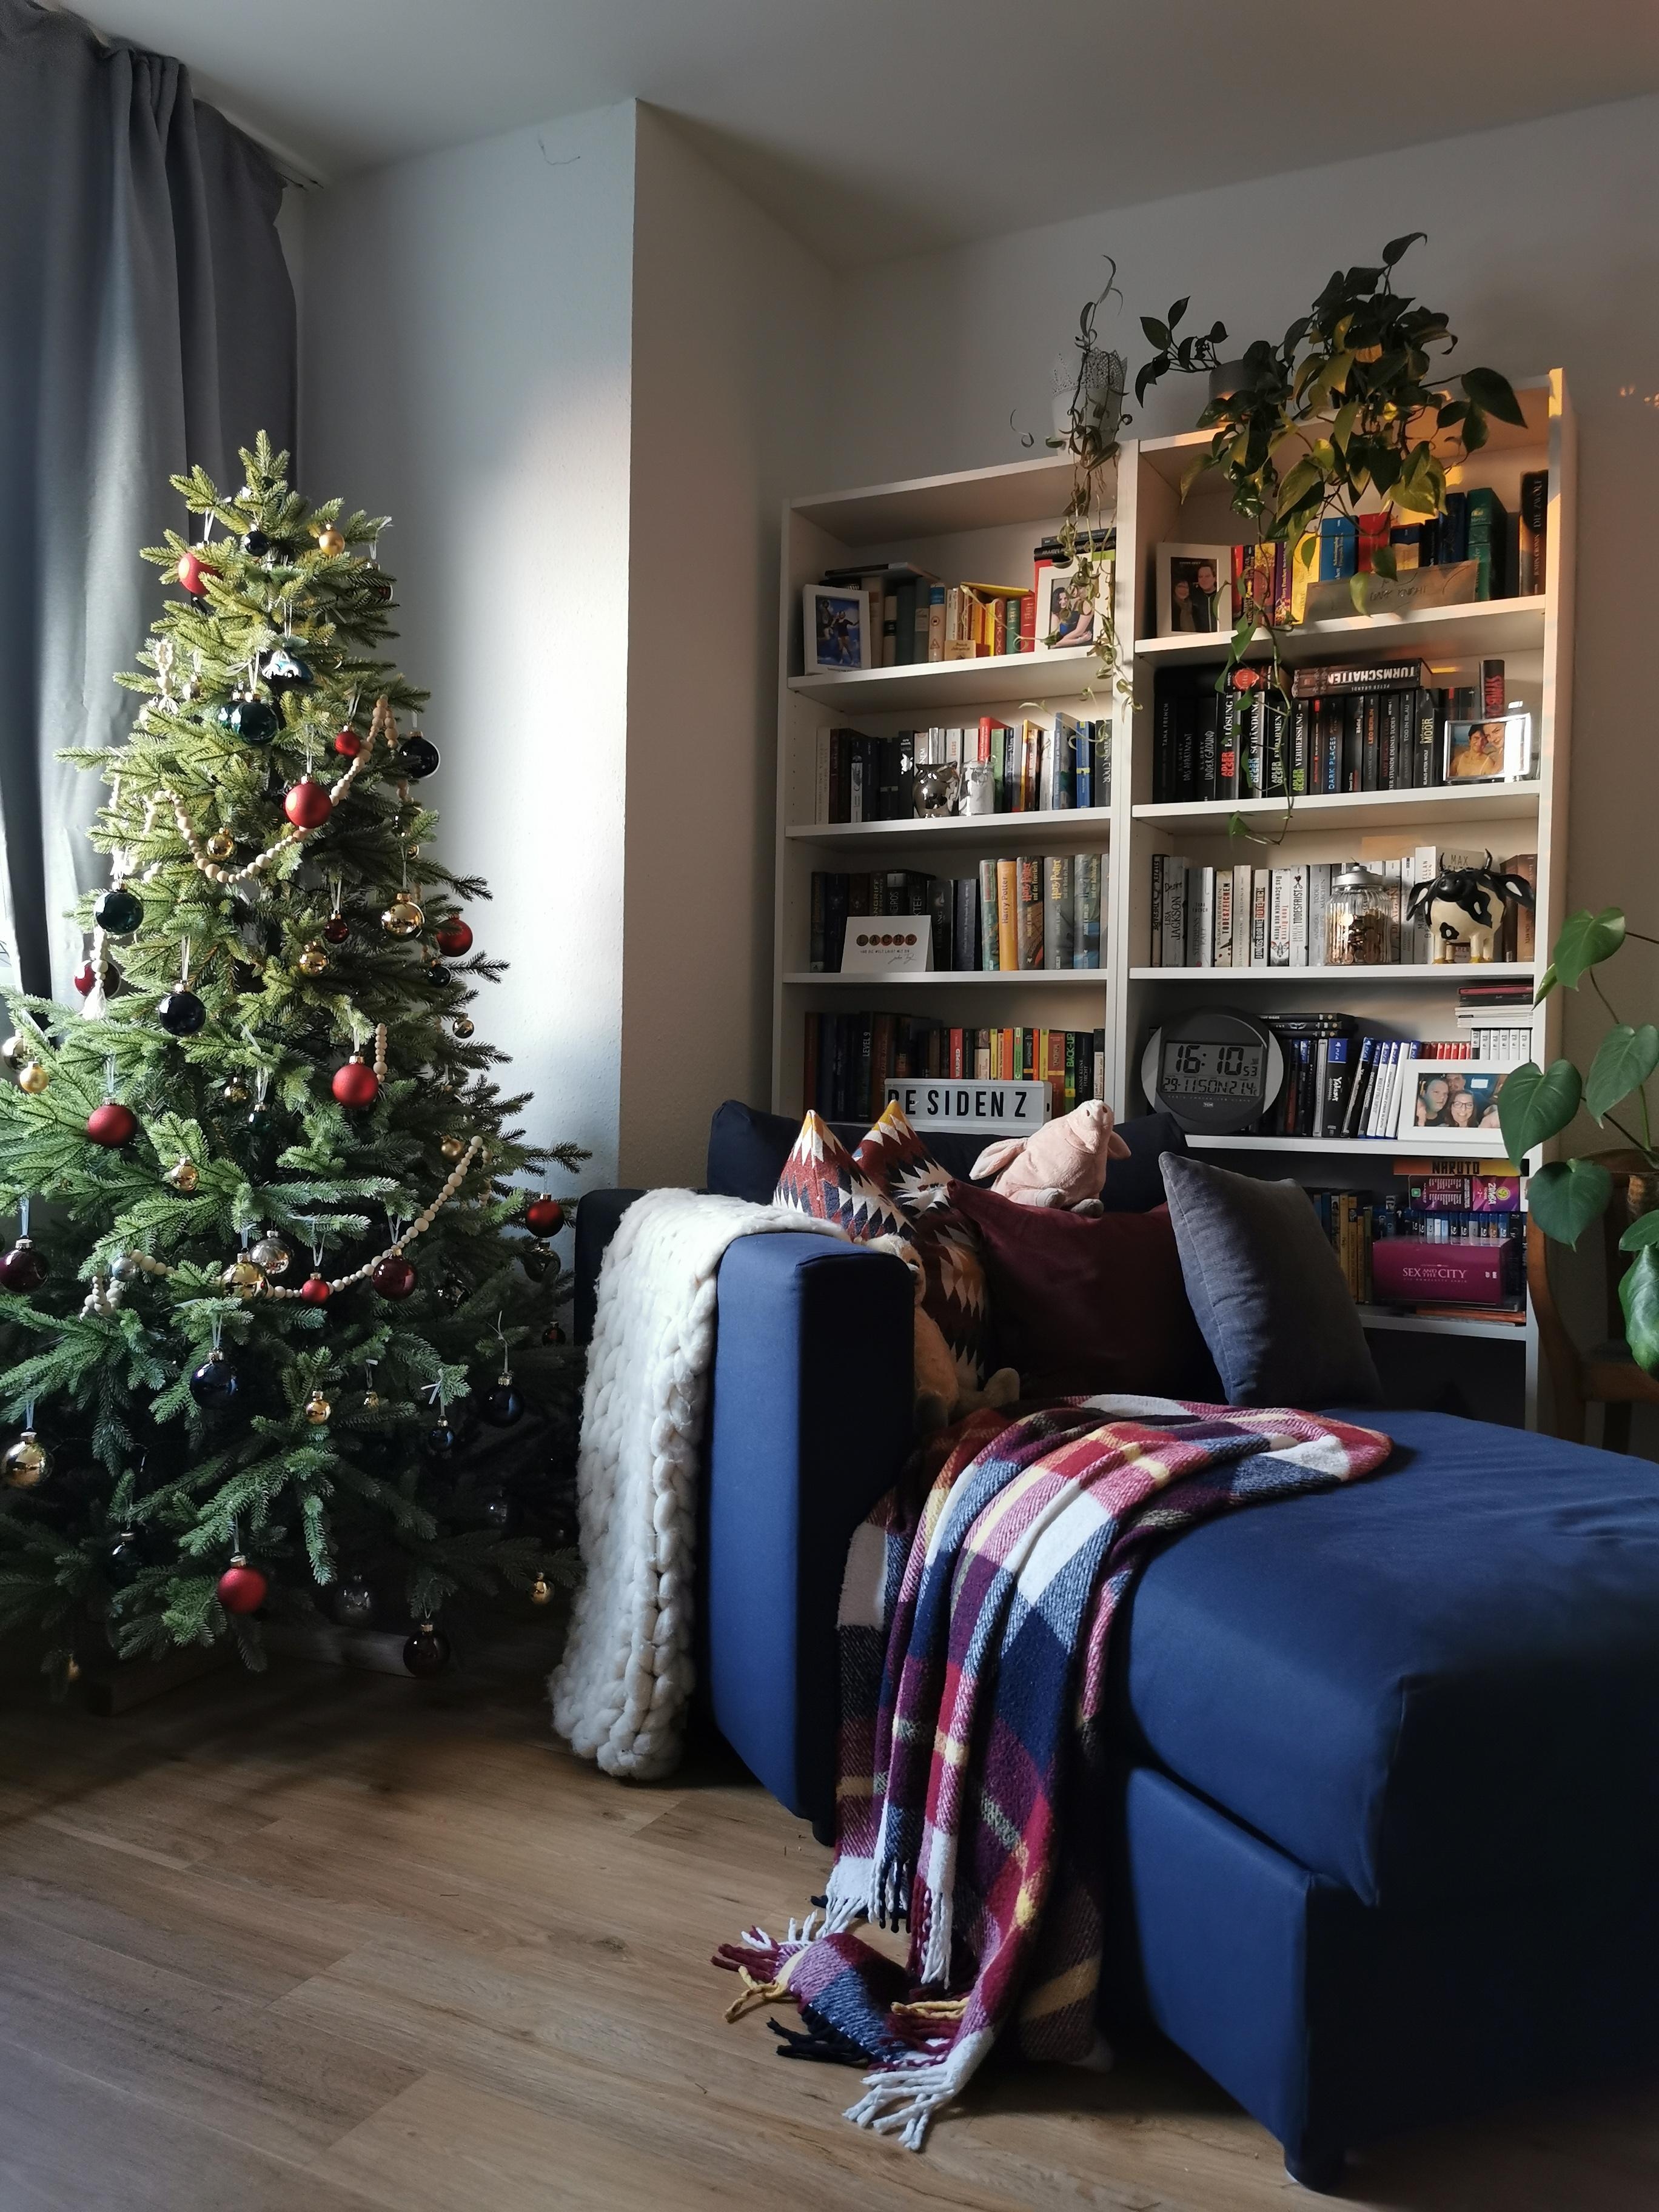 Hach ich mag den Anblick ❤️ #weihnachtsbaum #weihnachten #christmas #xmasdecorations #moderneweihnachten